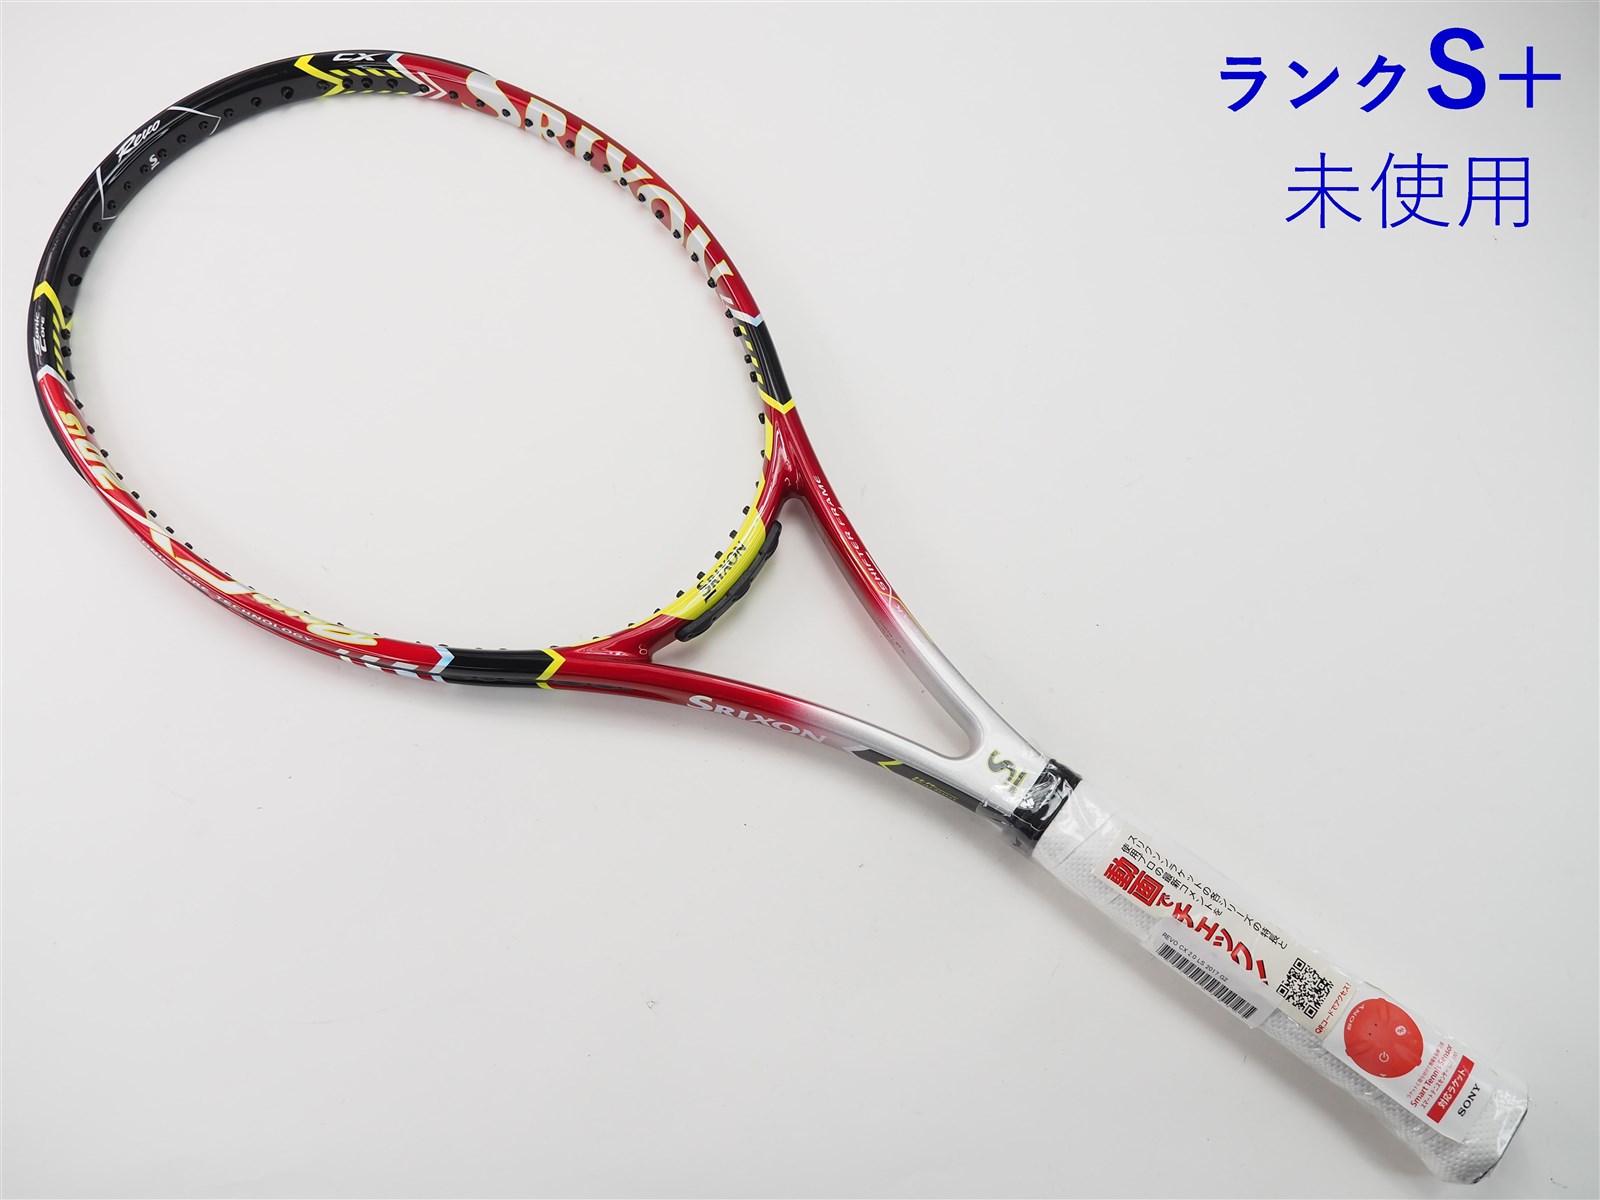 テニスラケット スリクソン レヴォ シーエックス 2.0 エルエス 2017年モデル (G3)SRIXON REVO CX 2.0 LS 2017